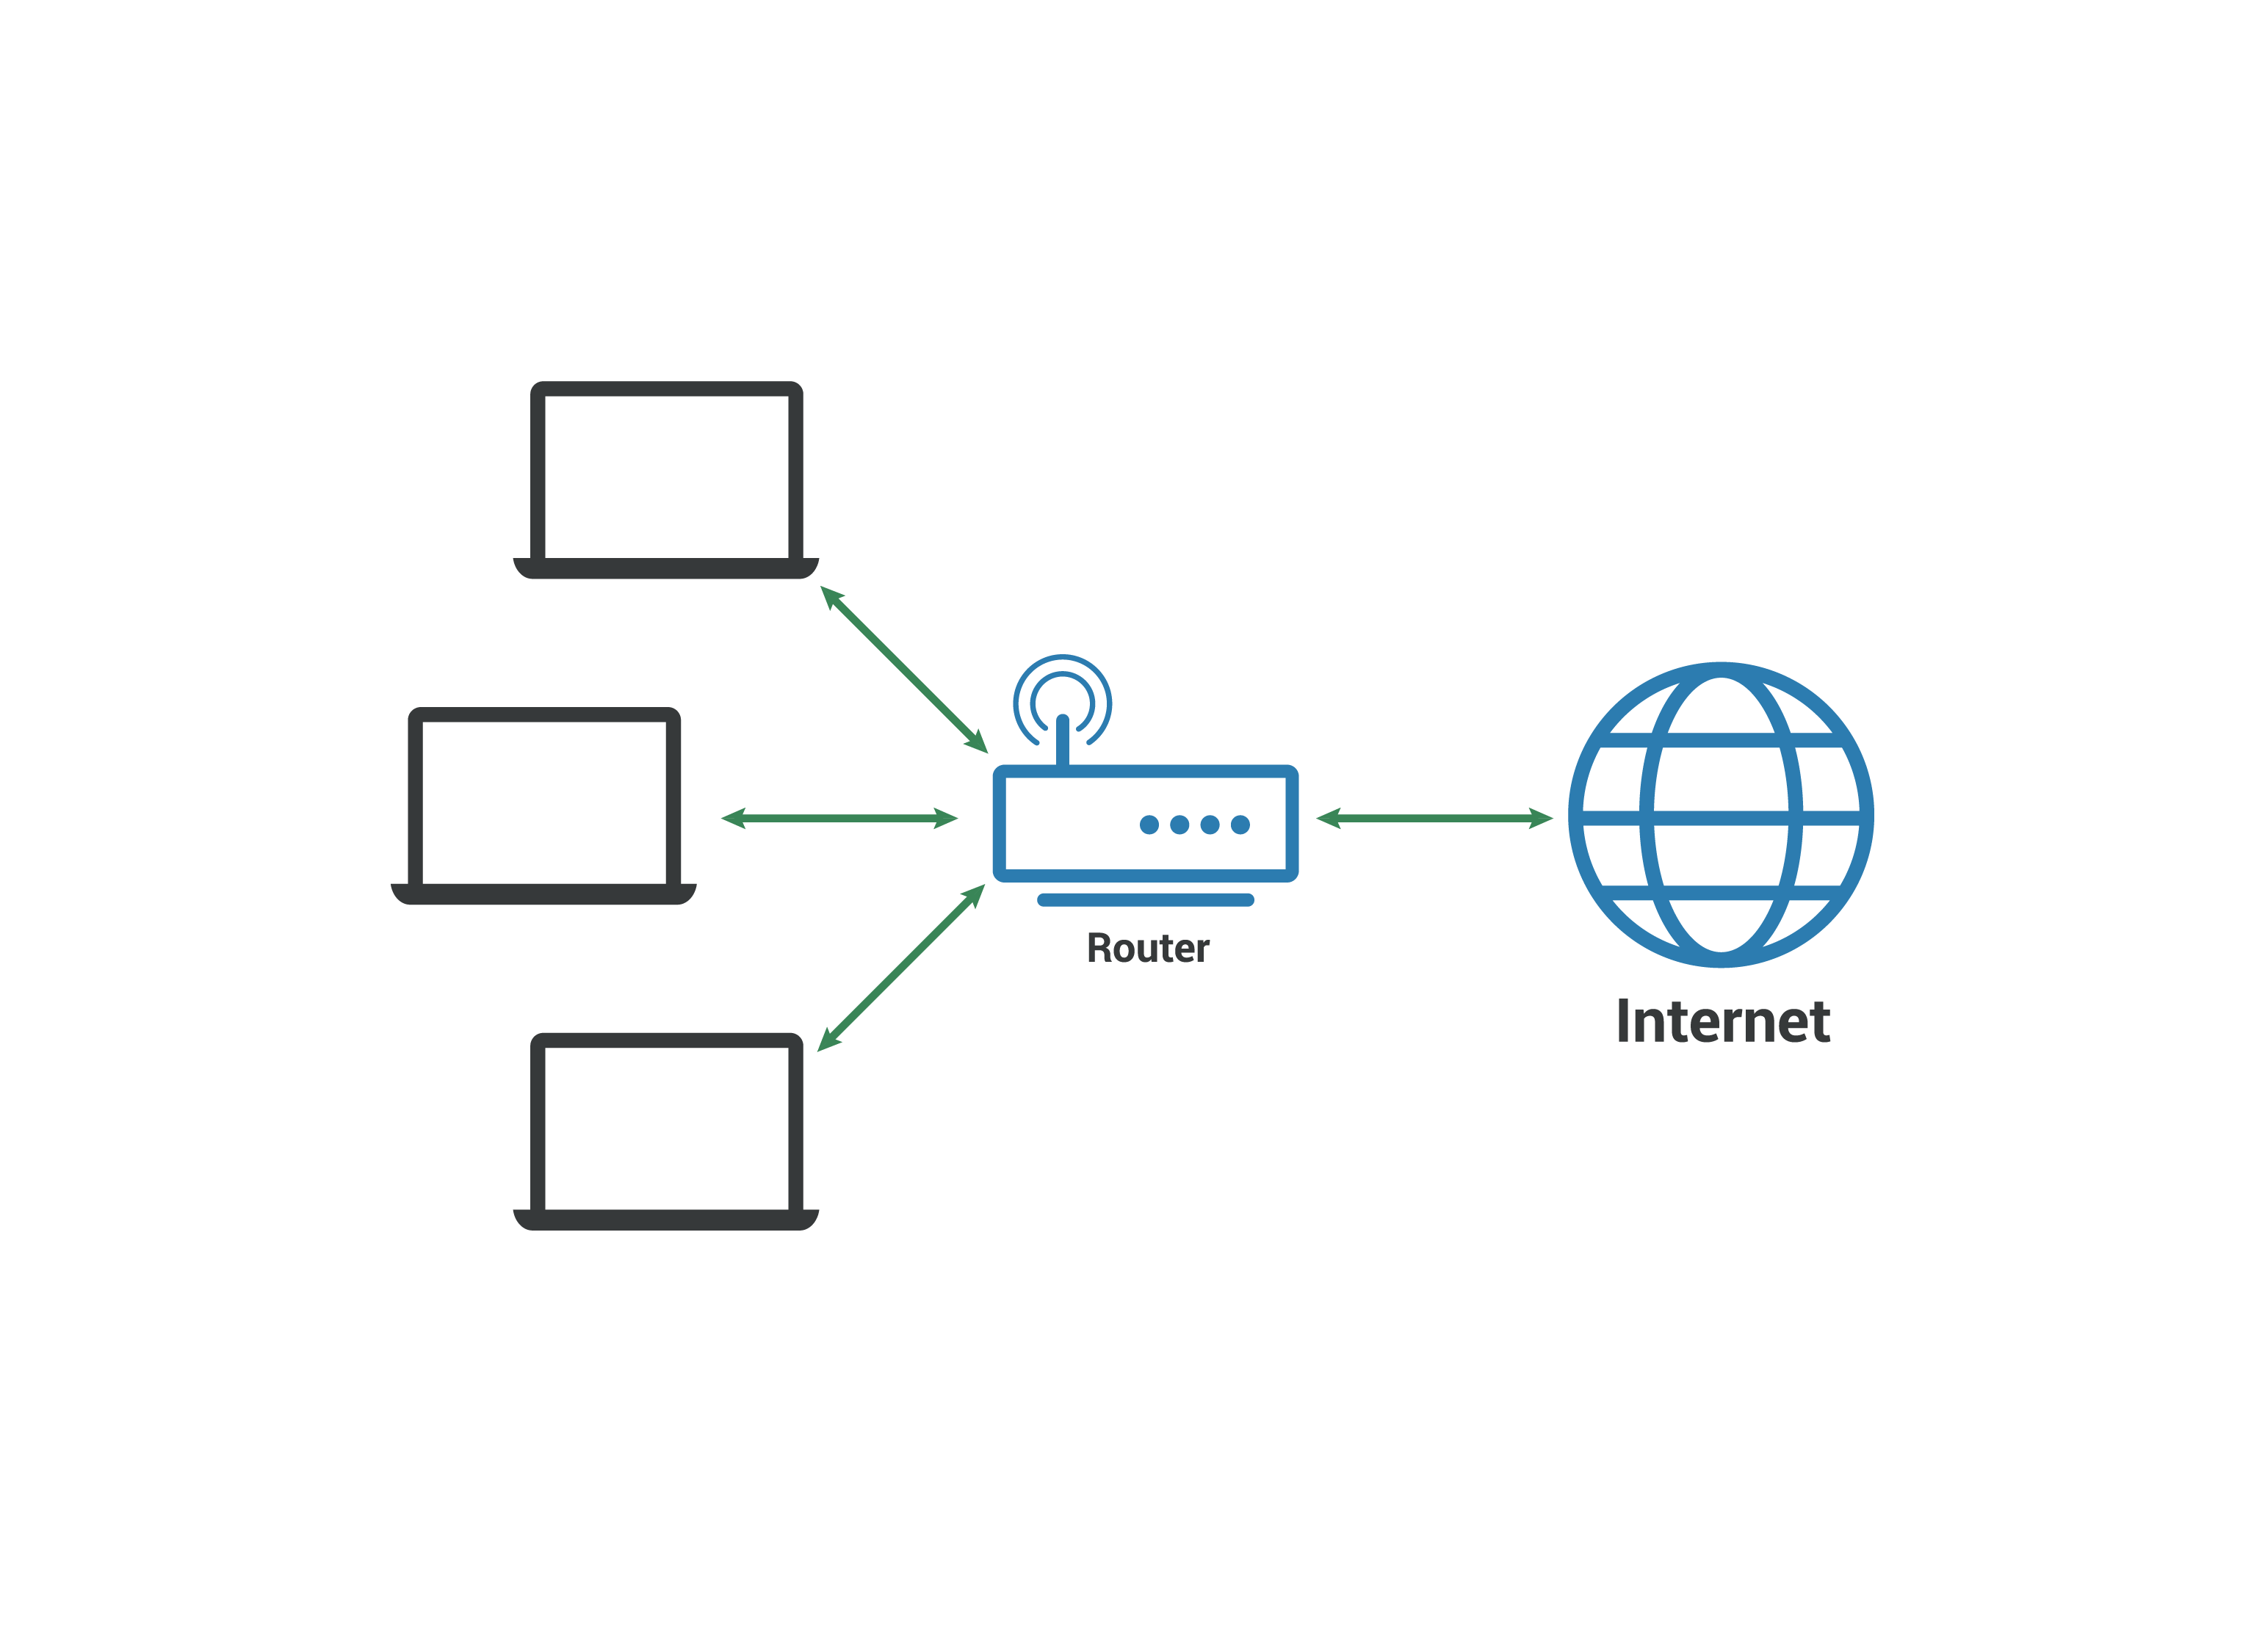 Rede local LAN - Os computadores se conectam ao roteador que se conecta à internet